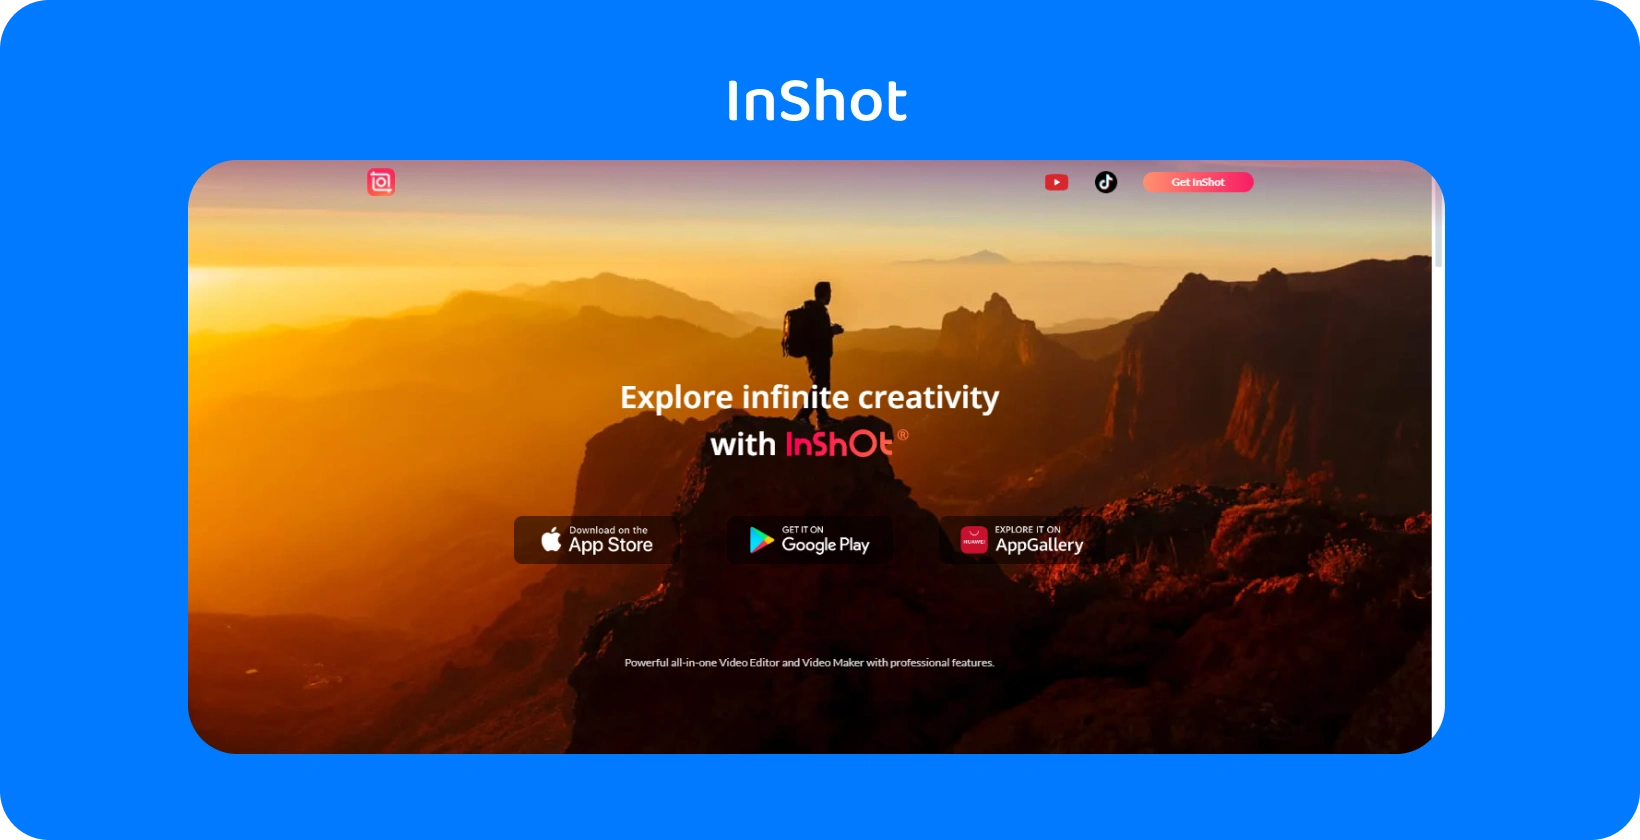 InShot quảng cáo của ứng dụng có hình ảnh một người đi bộ đường dài vào lúc hoàng hôn, tượng trưng cho lời hứa của ứng dụng để khám phá sự sáng tạo vô hạn trong chỉnh sửa video.
